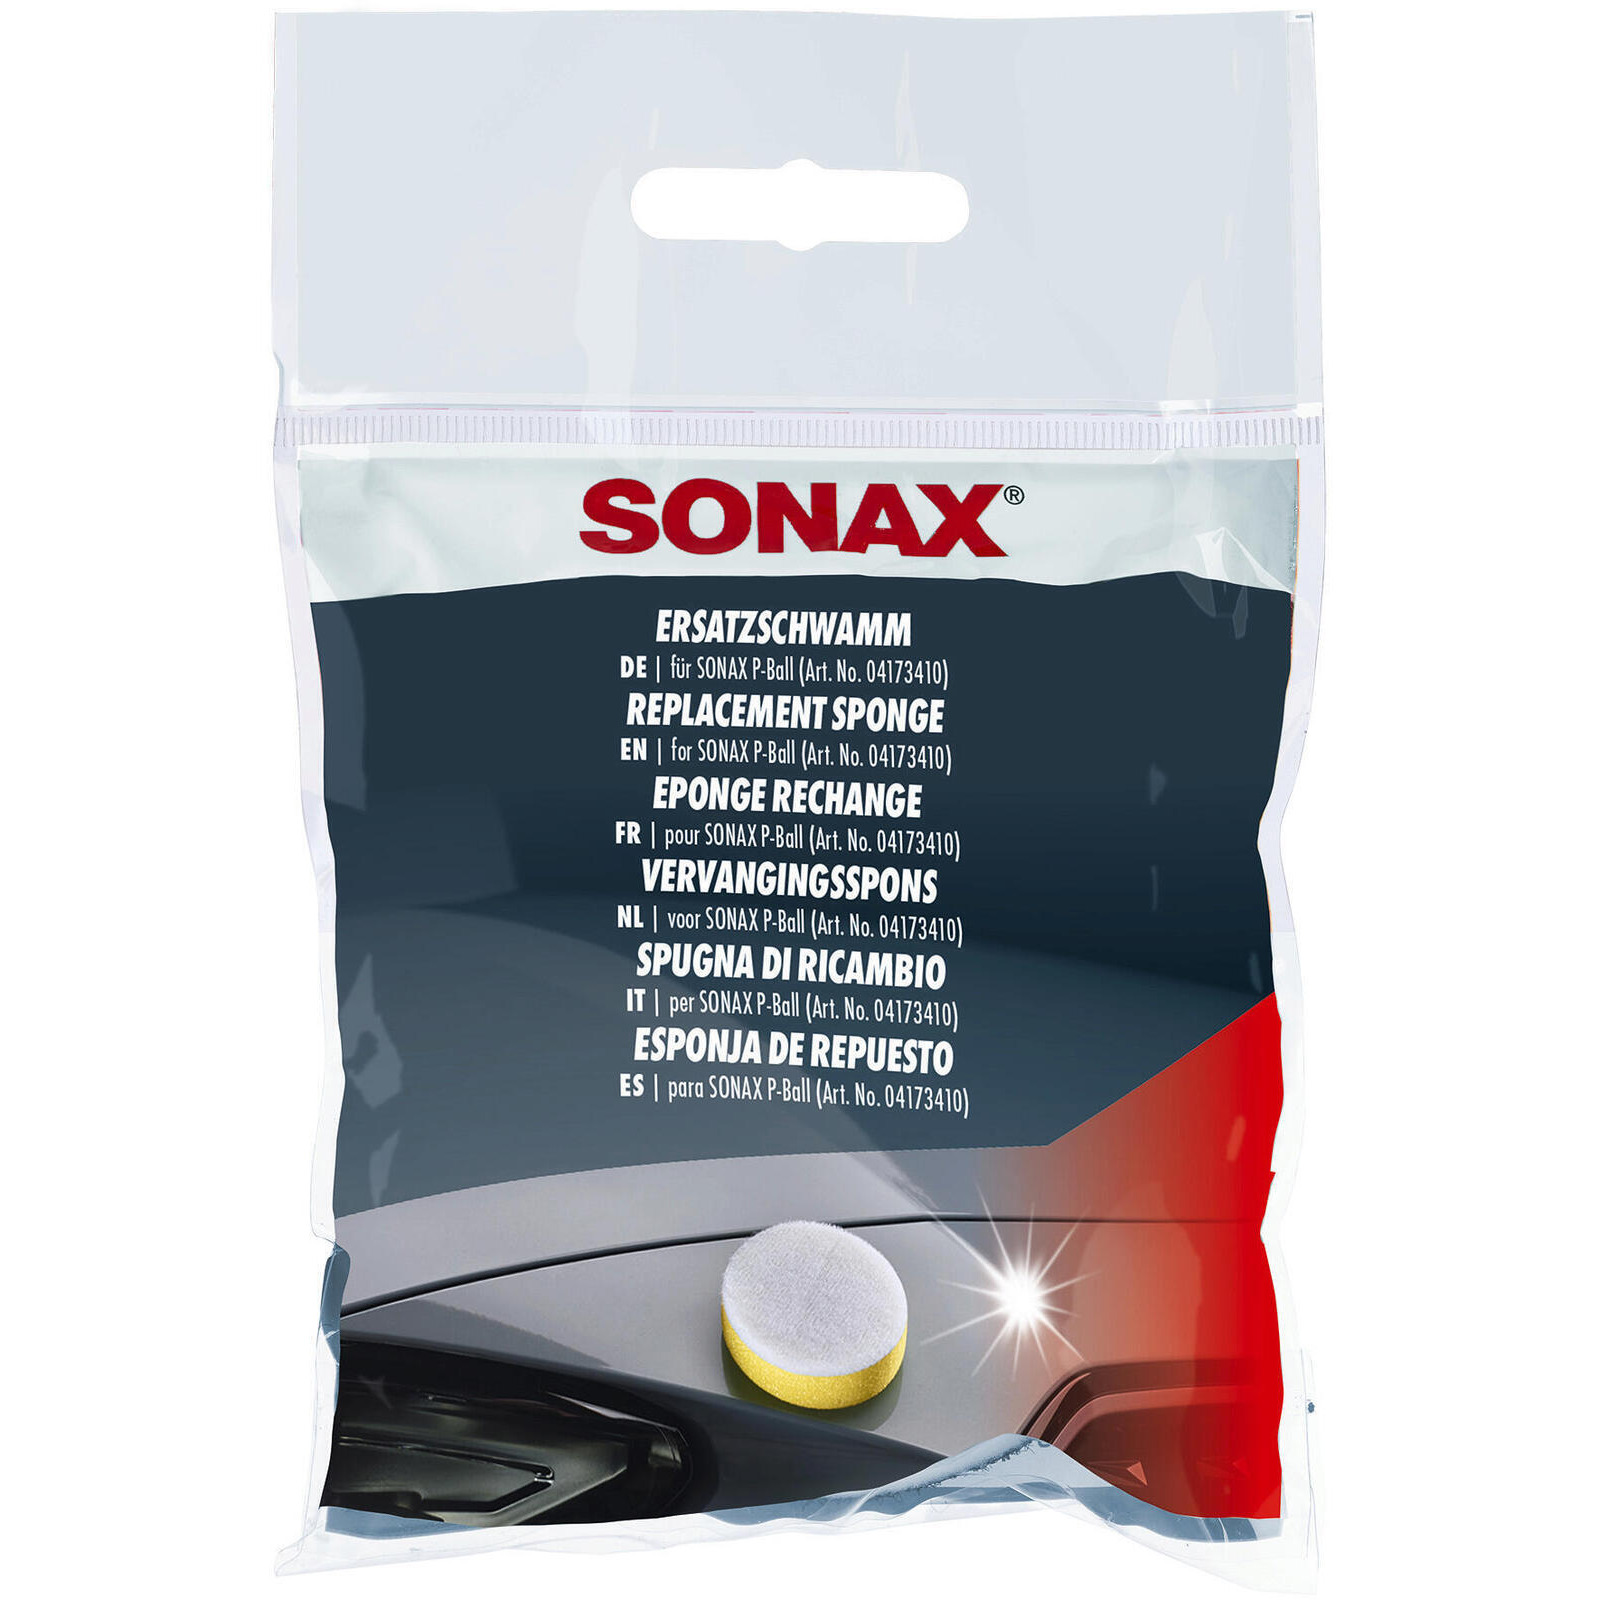 SONAX Sponge substitute sponge for P-Ball